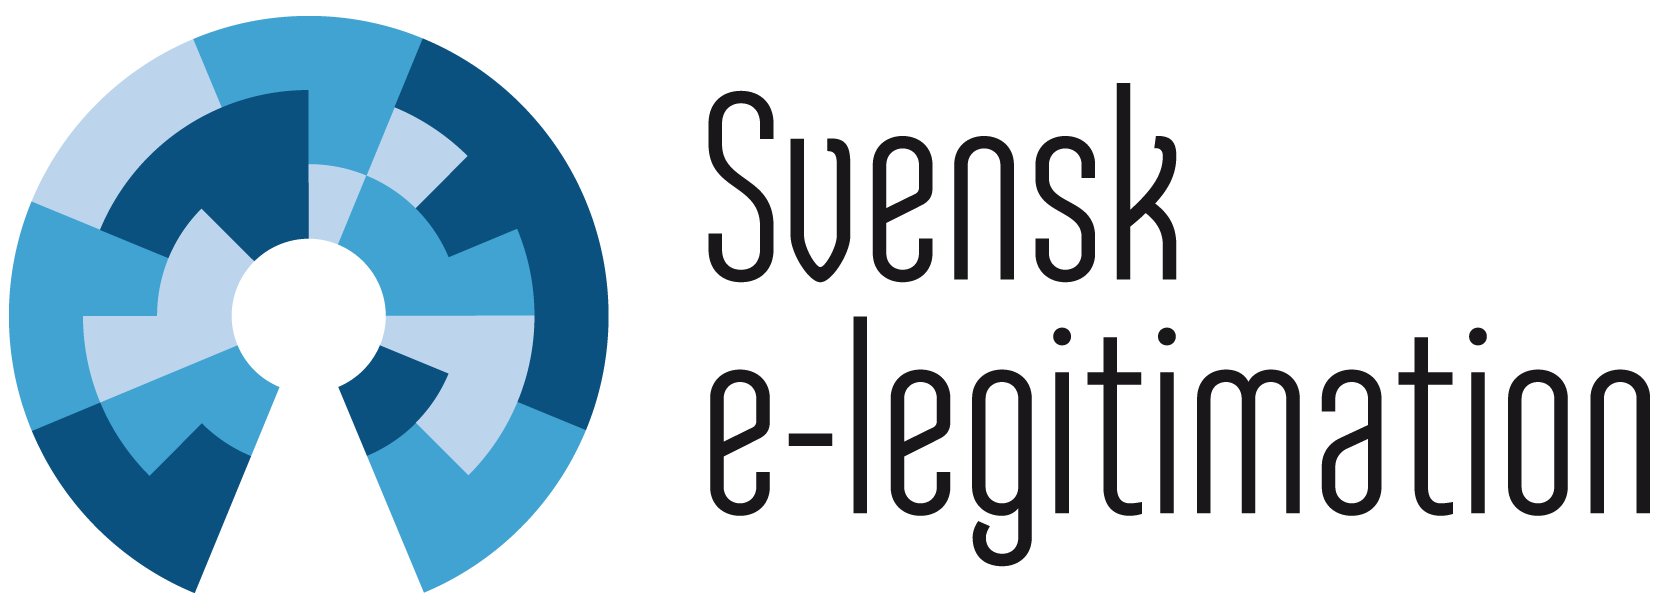 Logotype för Svensk e-legitimation